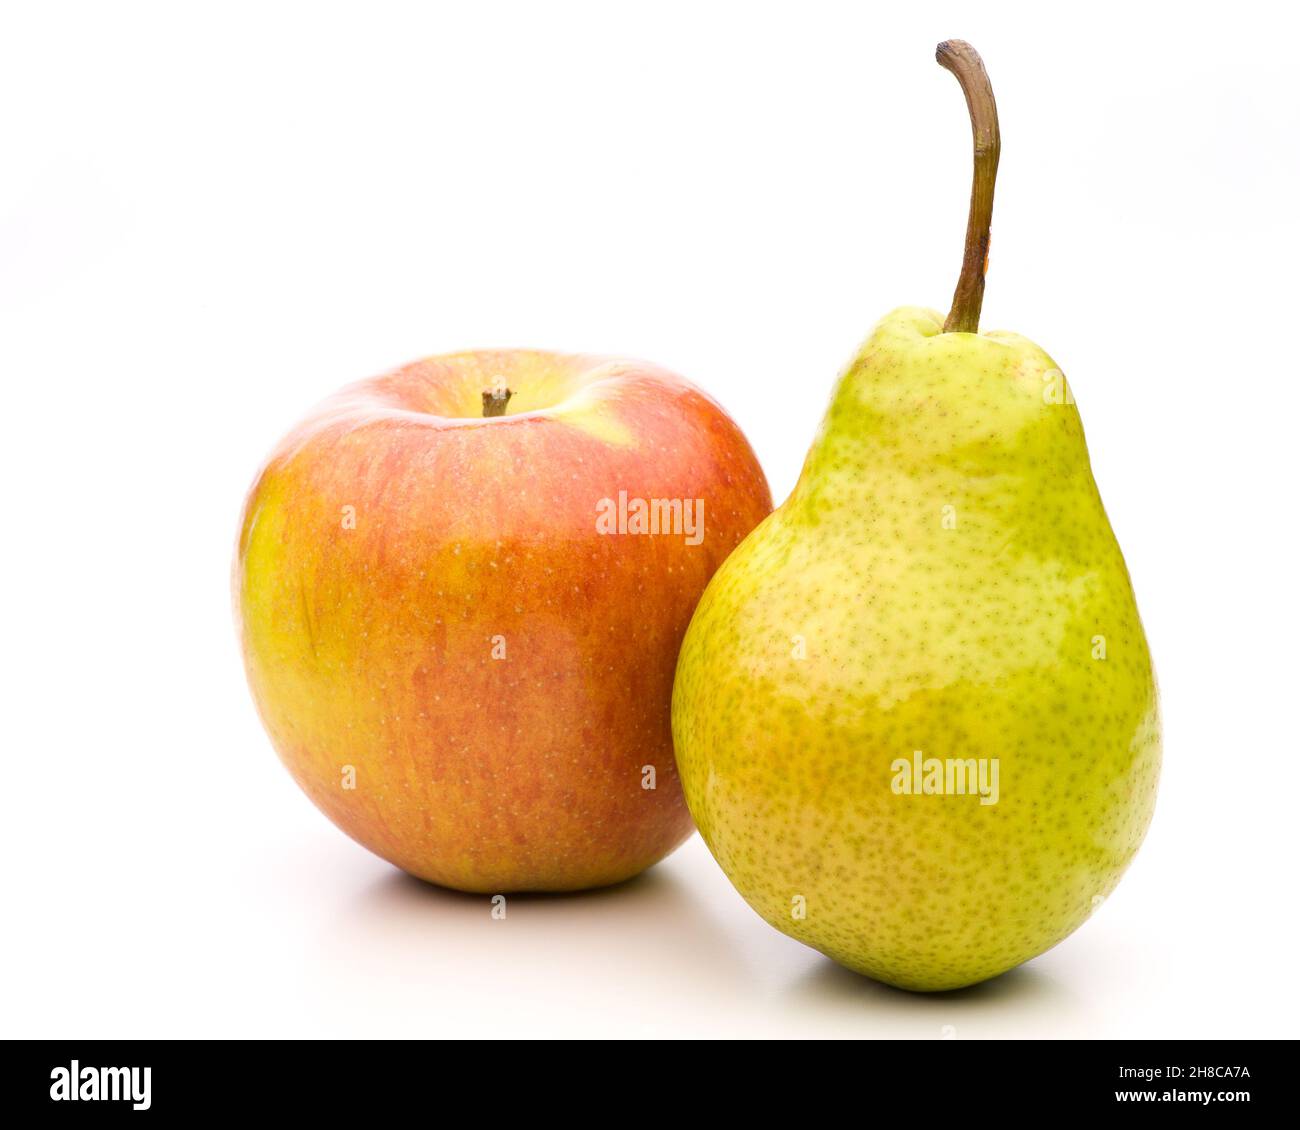 Compare las manzanas con las peras, apoyándose unas sobre otras Foto de stock